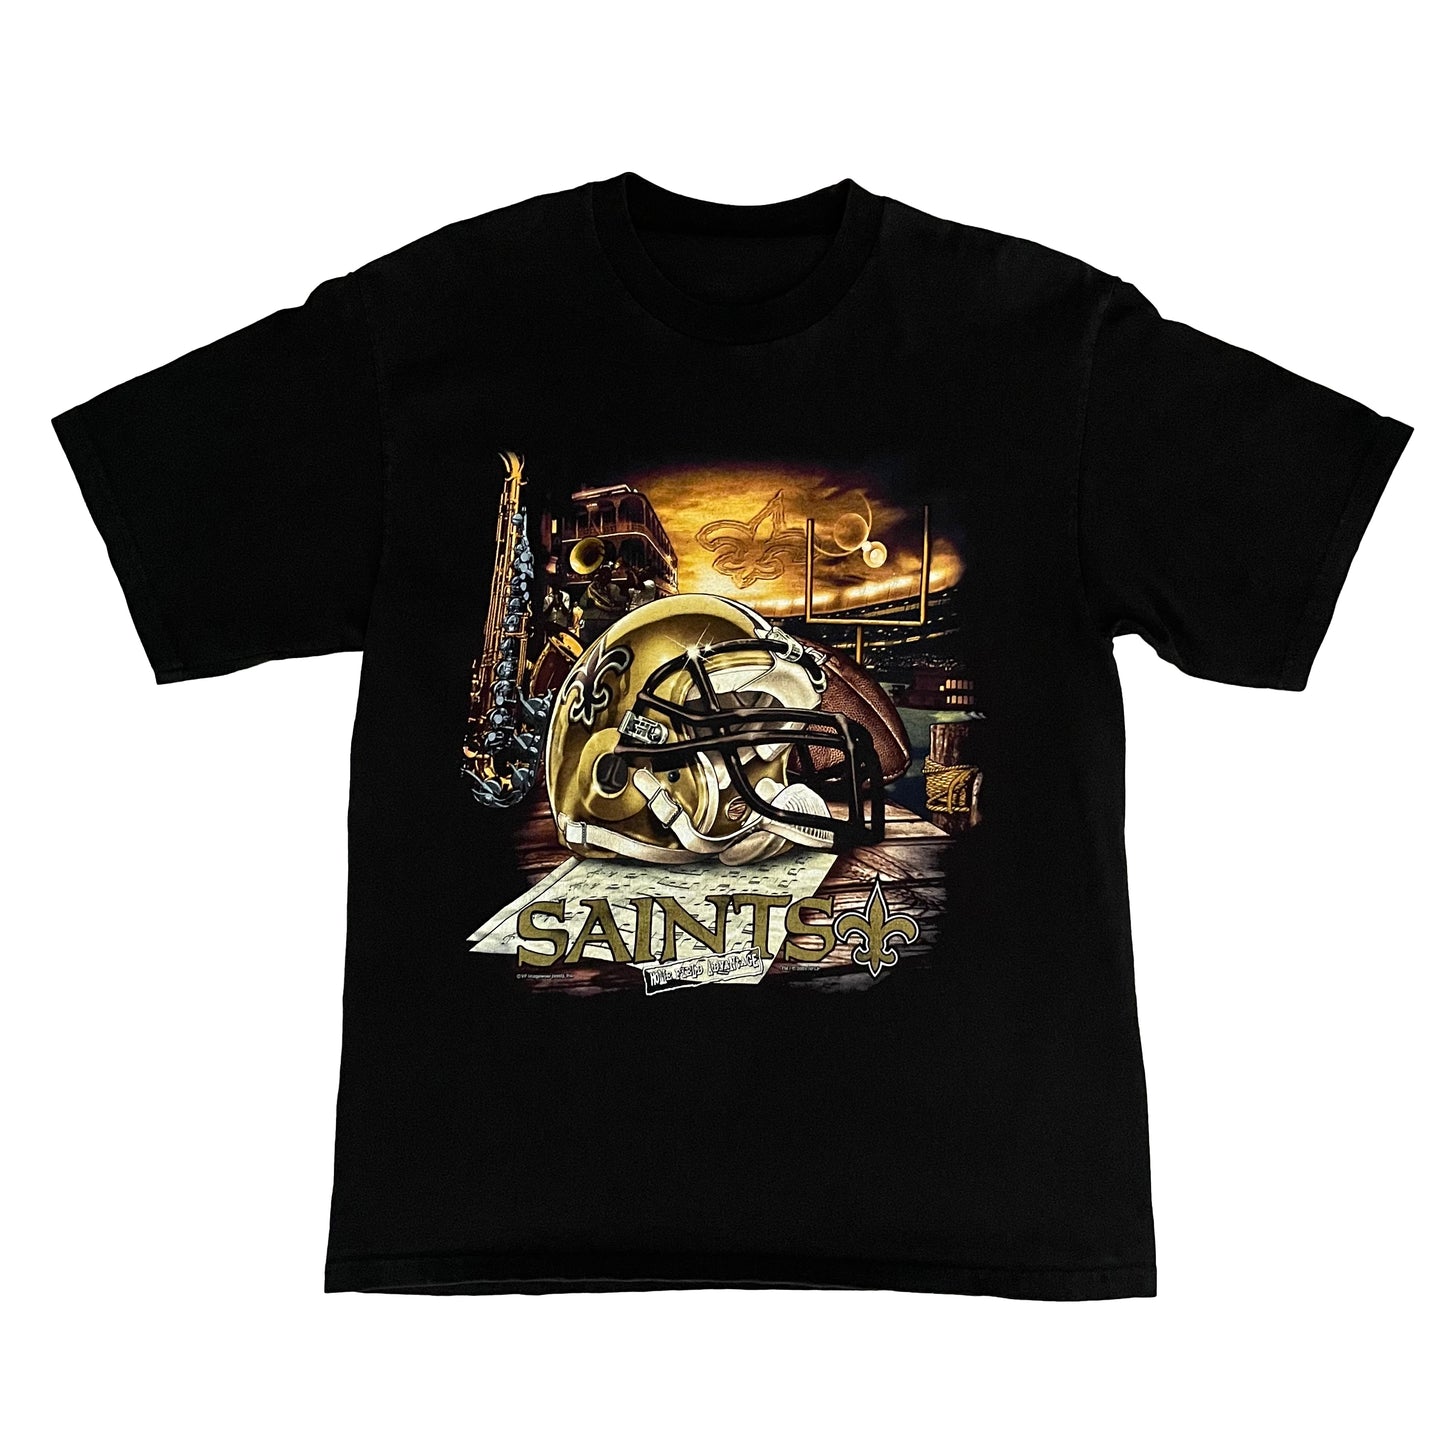 New Orleans Saints shirt